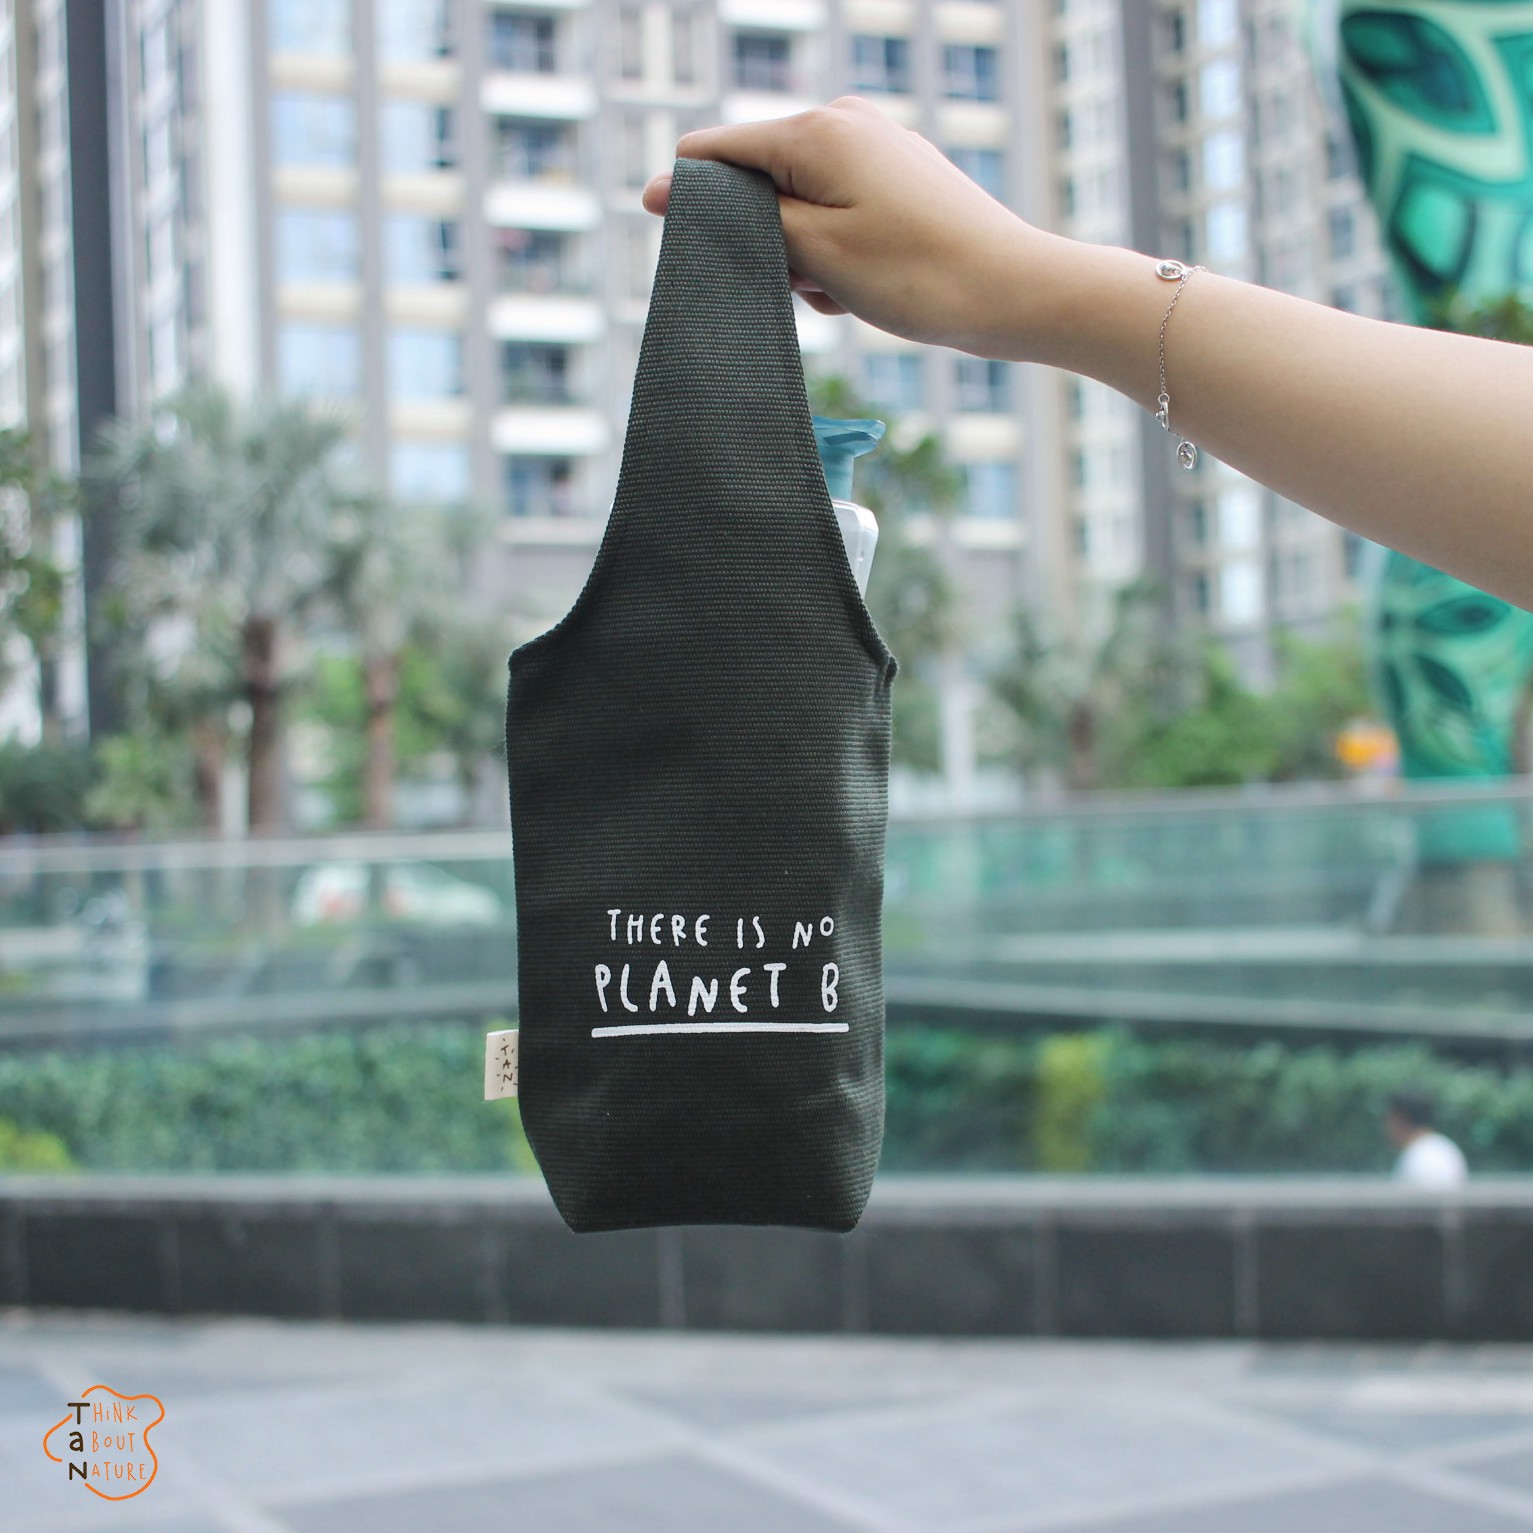 Túi vải canvas đựng chai, ly nước chất liệu dễ vỡ